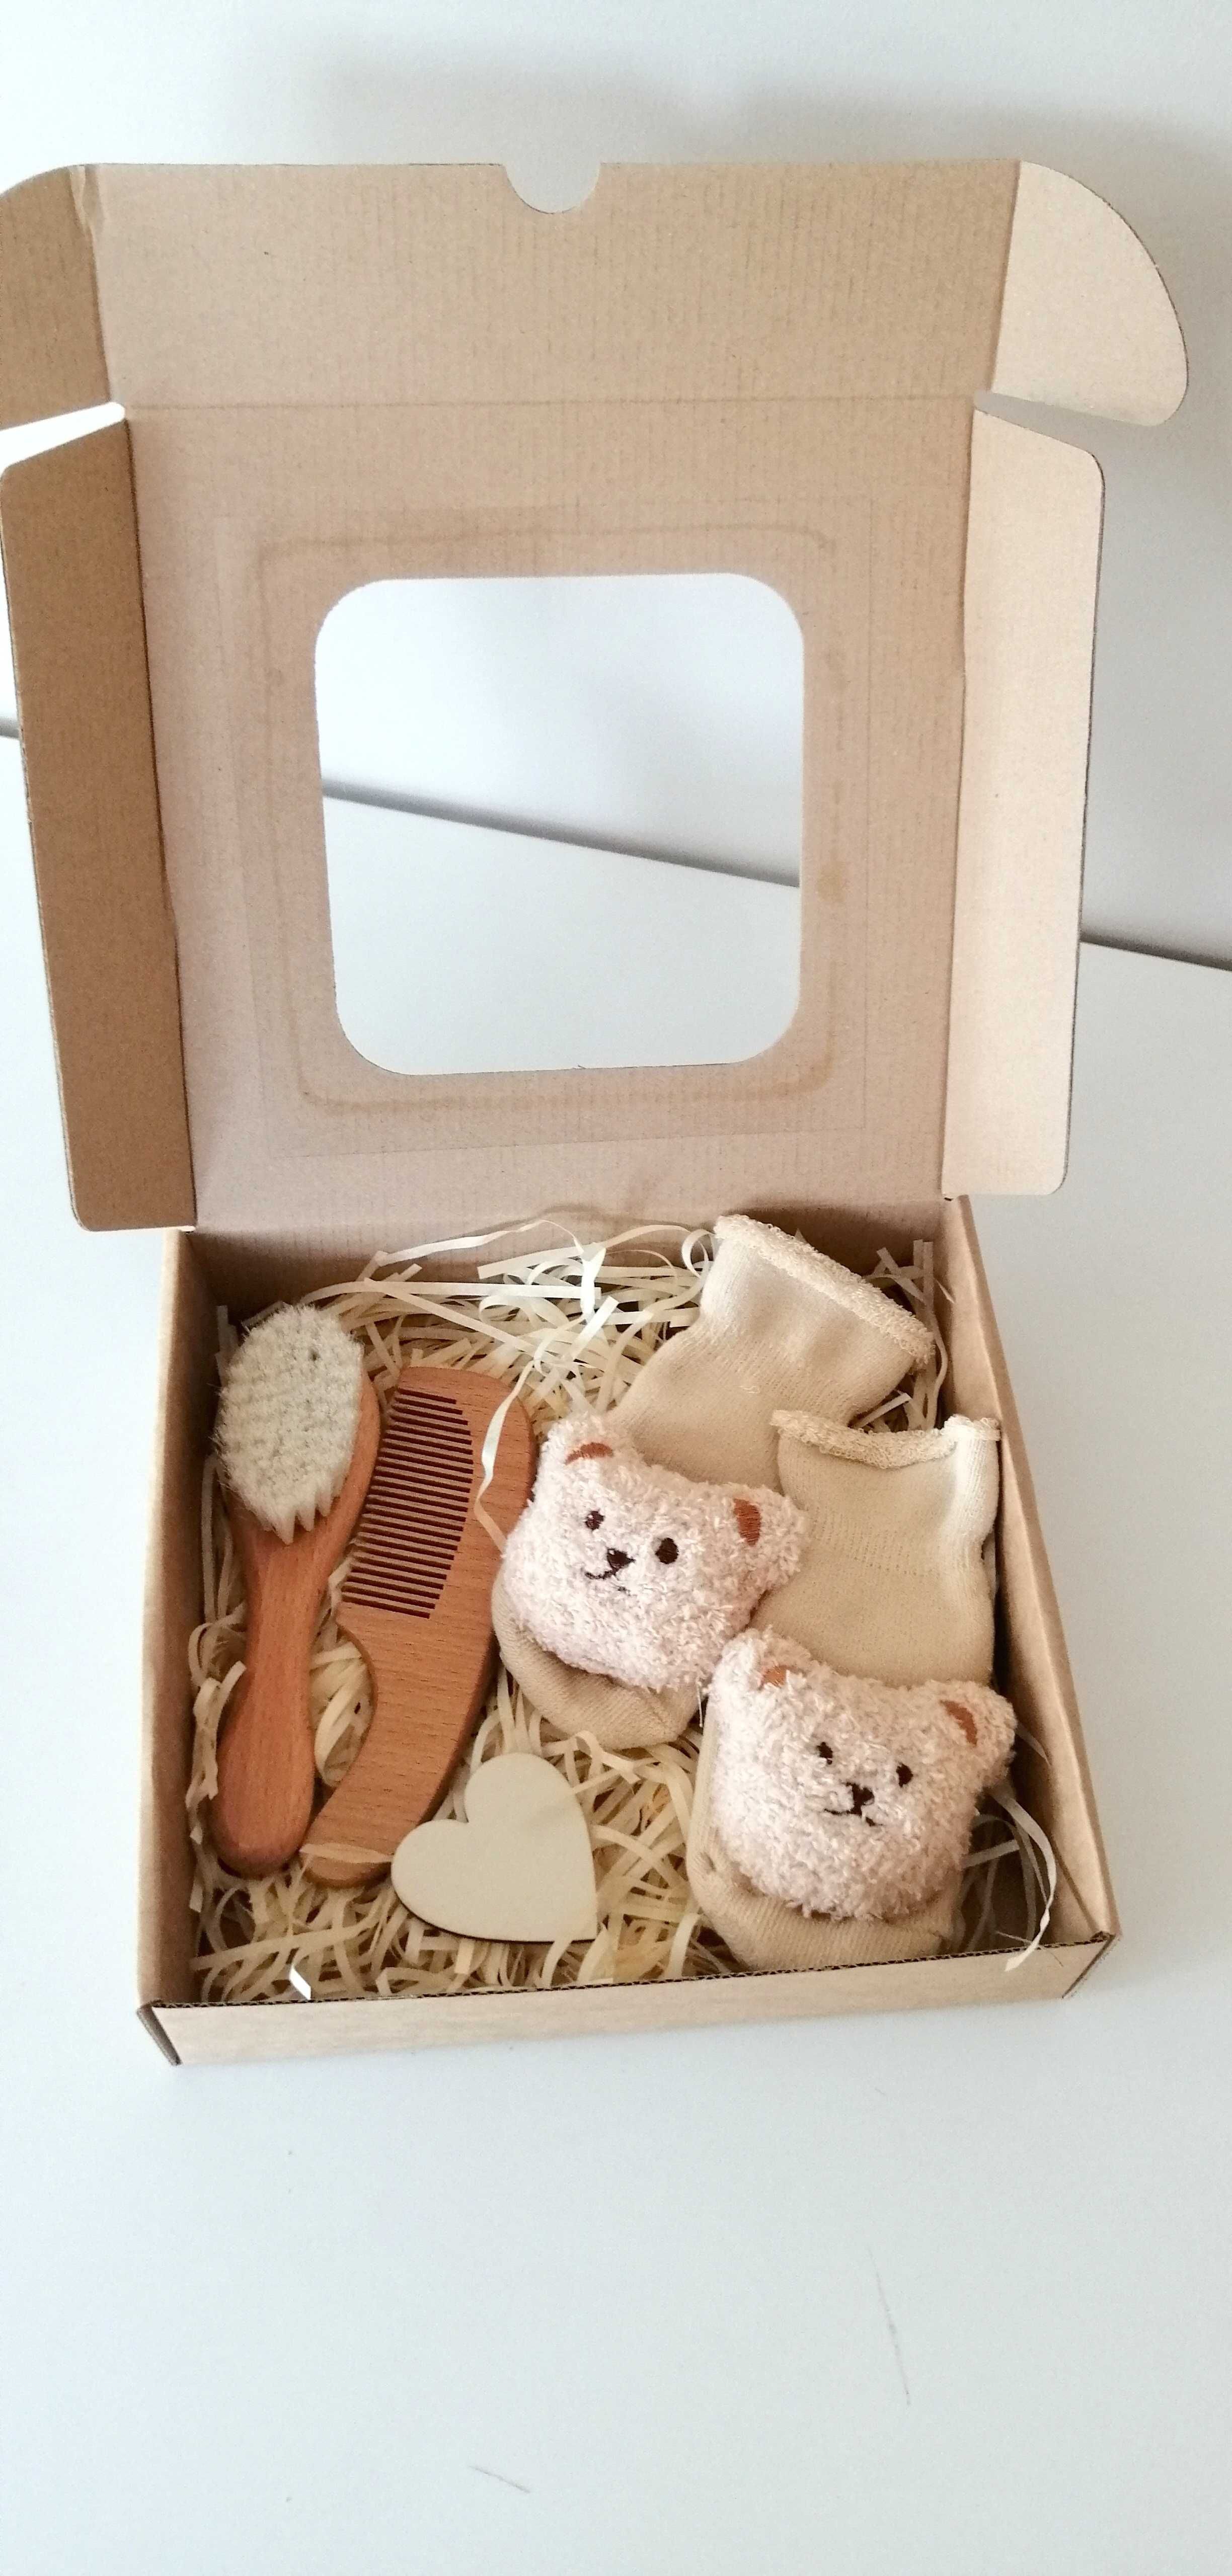 giftbox zestaw prezentowy dla dziecka baby shower narodziny chrzest